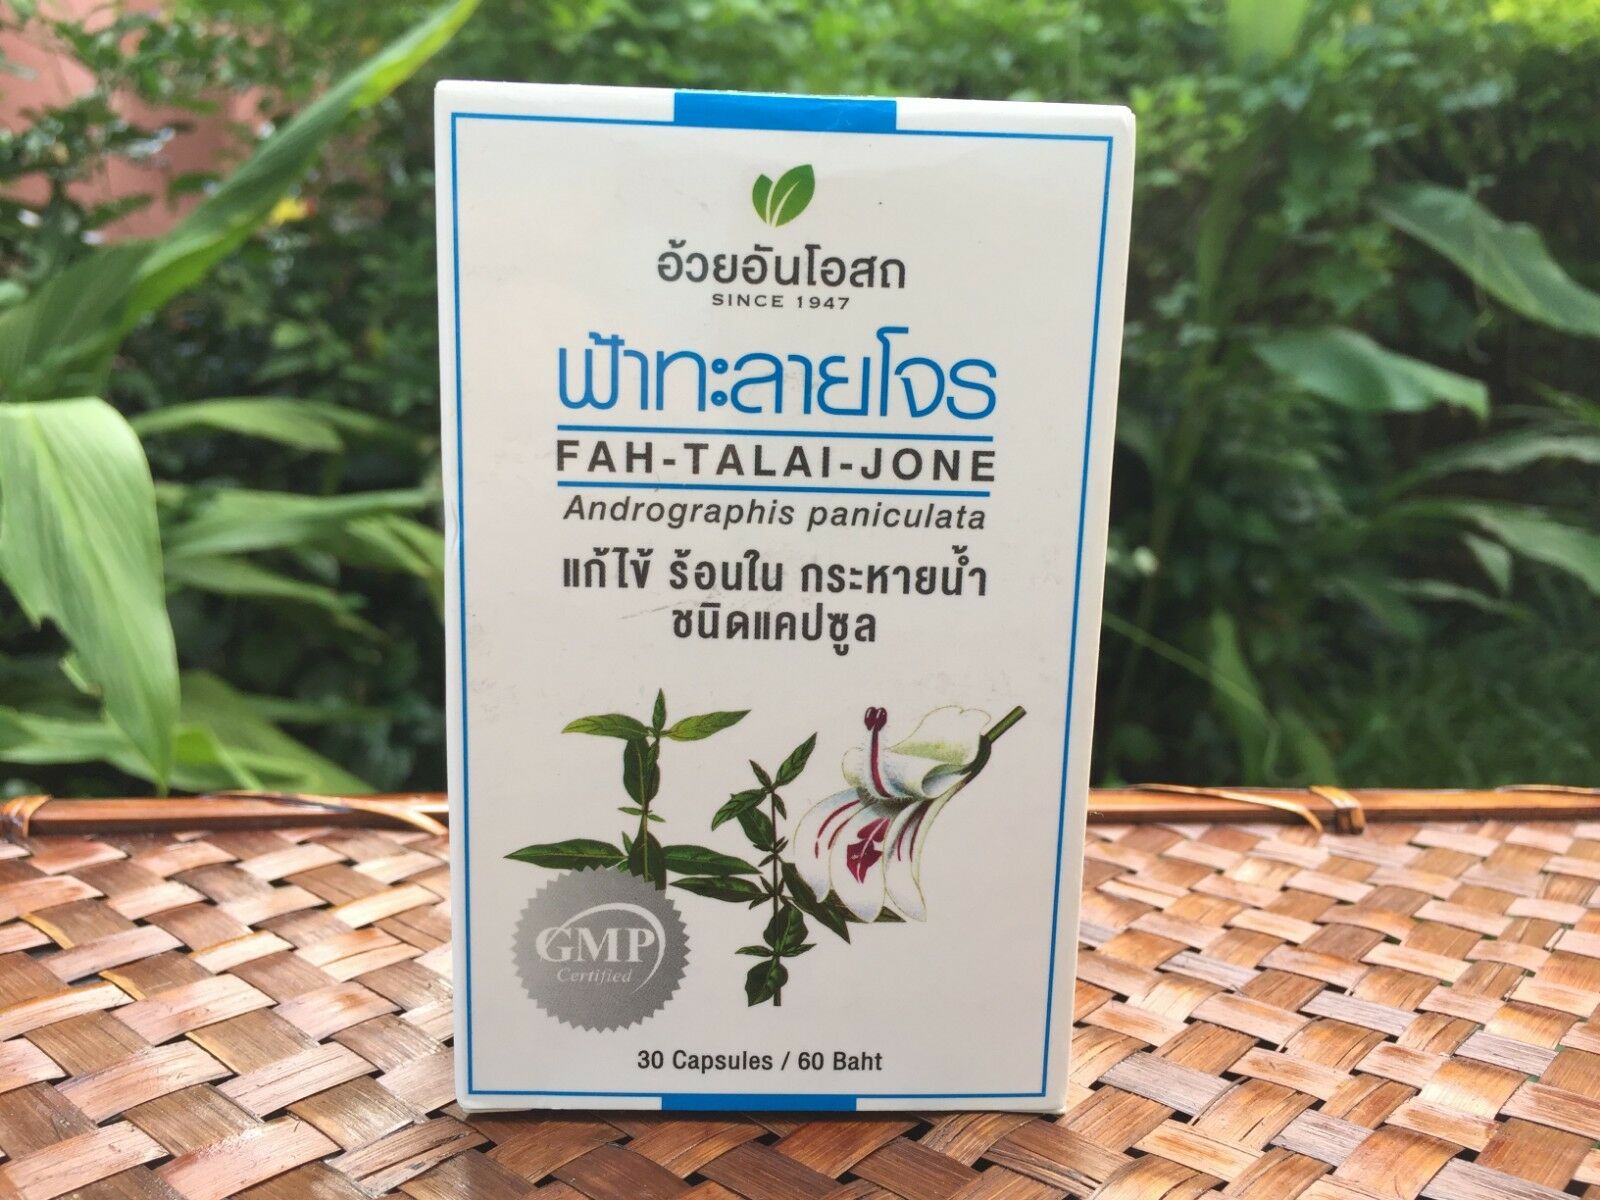 Таиланд одобрил траву чиретта в качестве лекарства от COVID-19